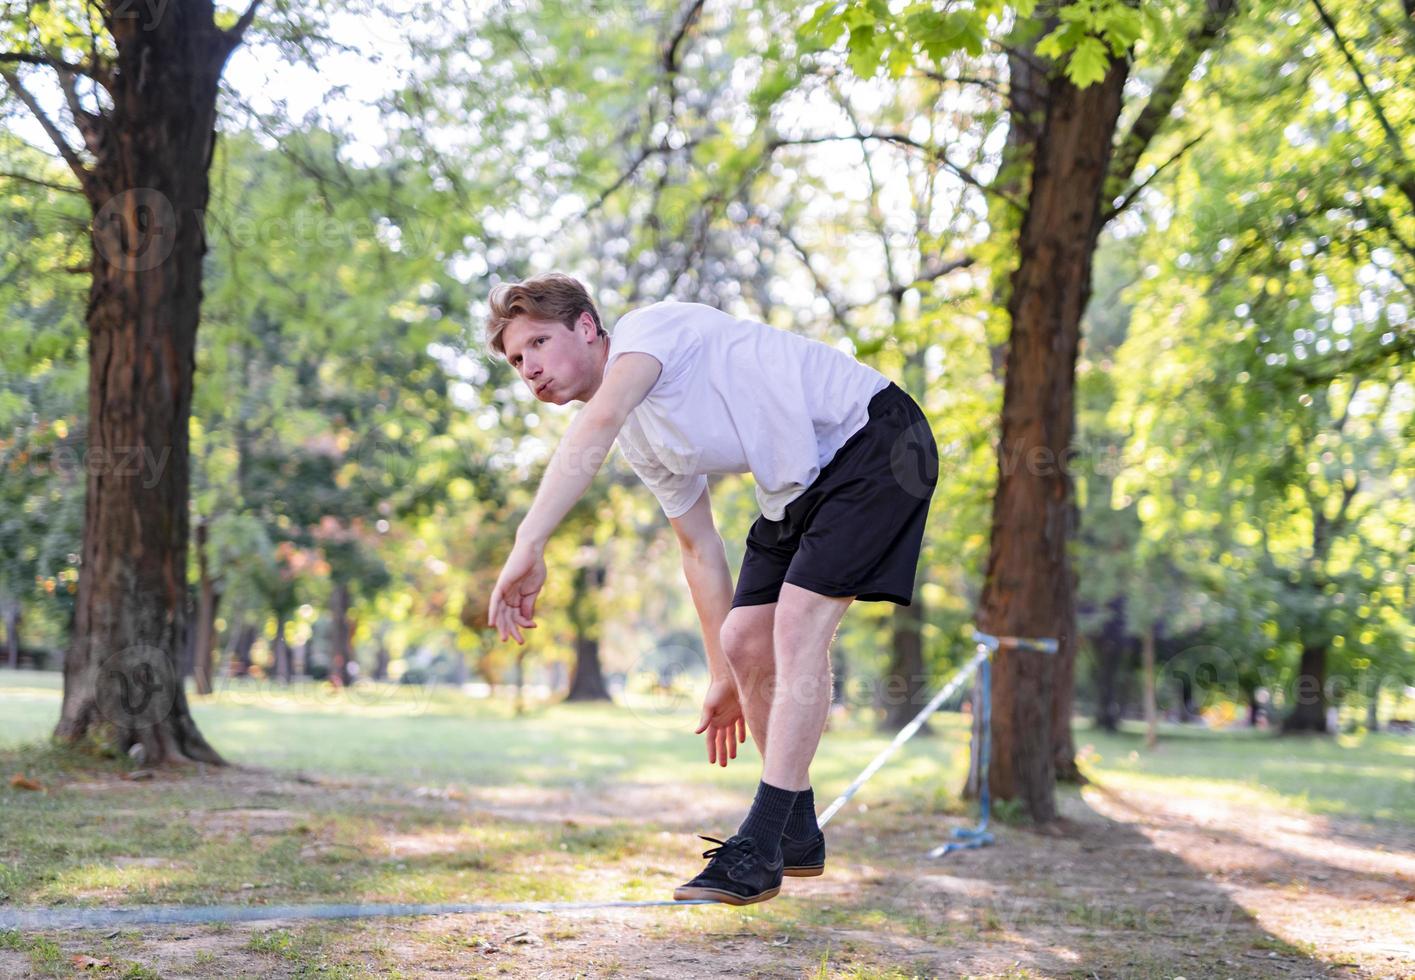 jovem equilibrando e pulando no slackline. homem andando, pulando e equilibrando-se na corda no parque. foto